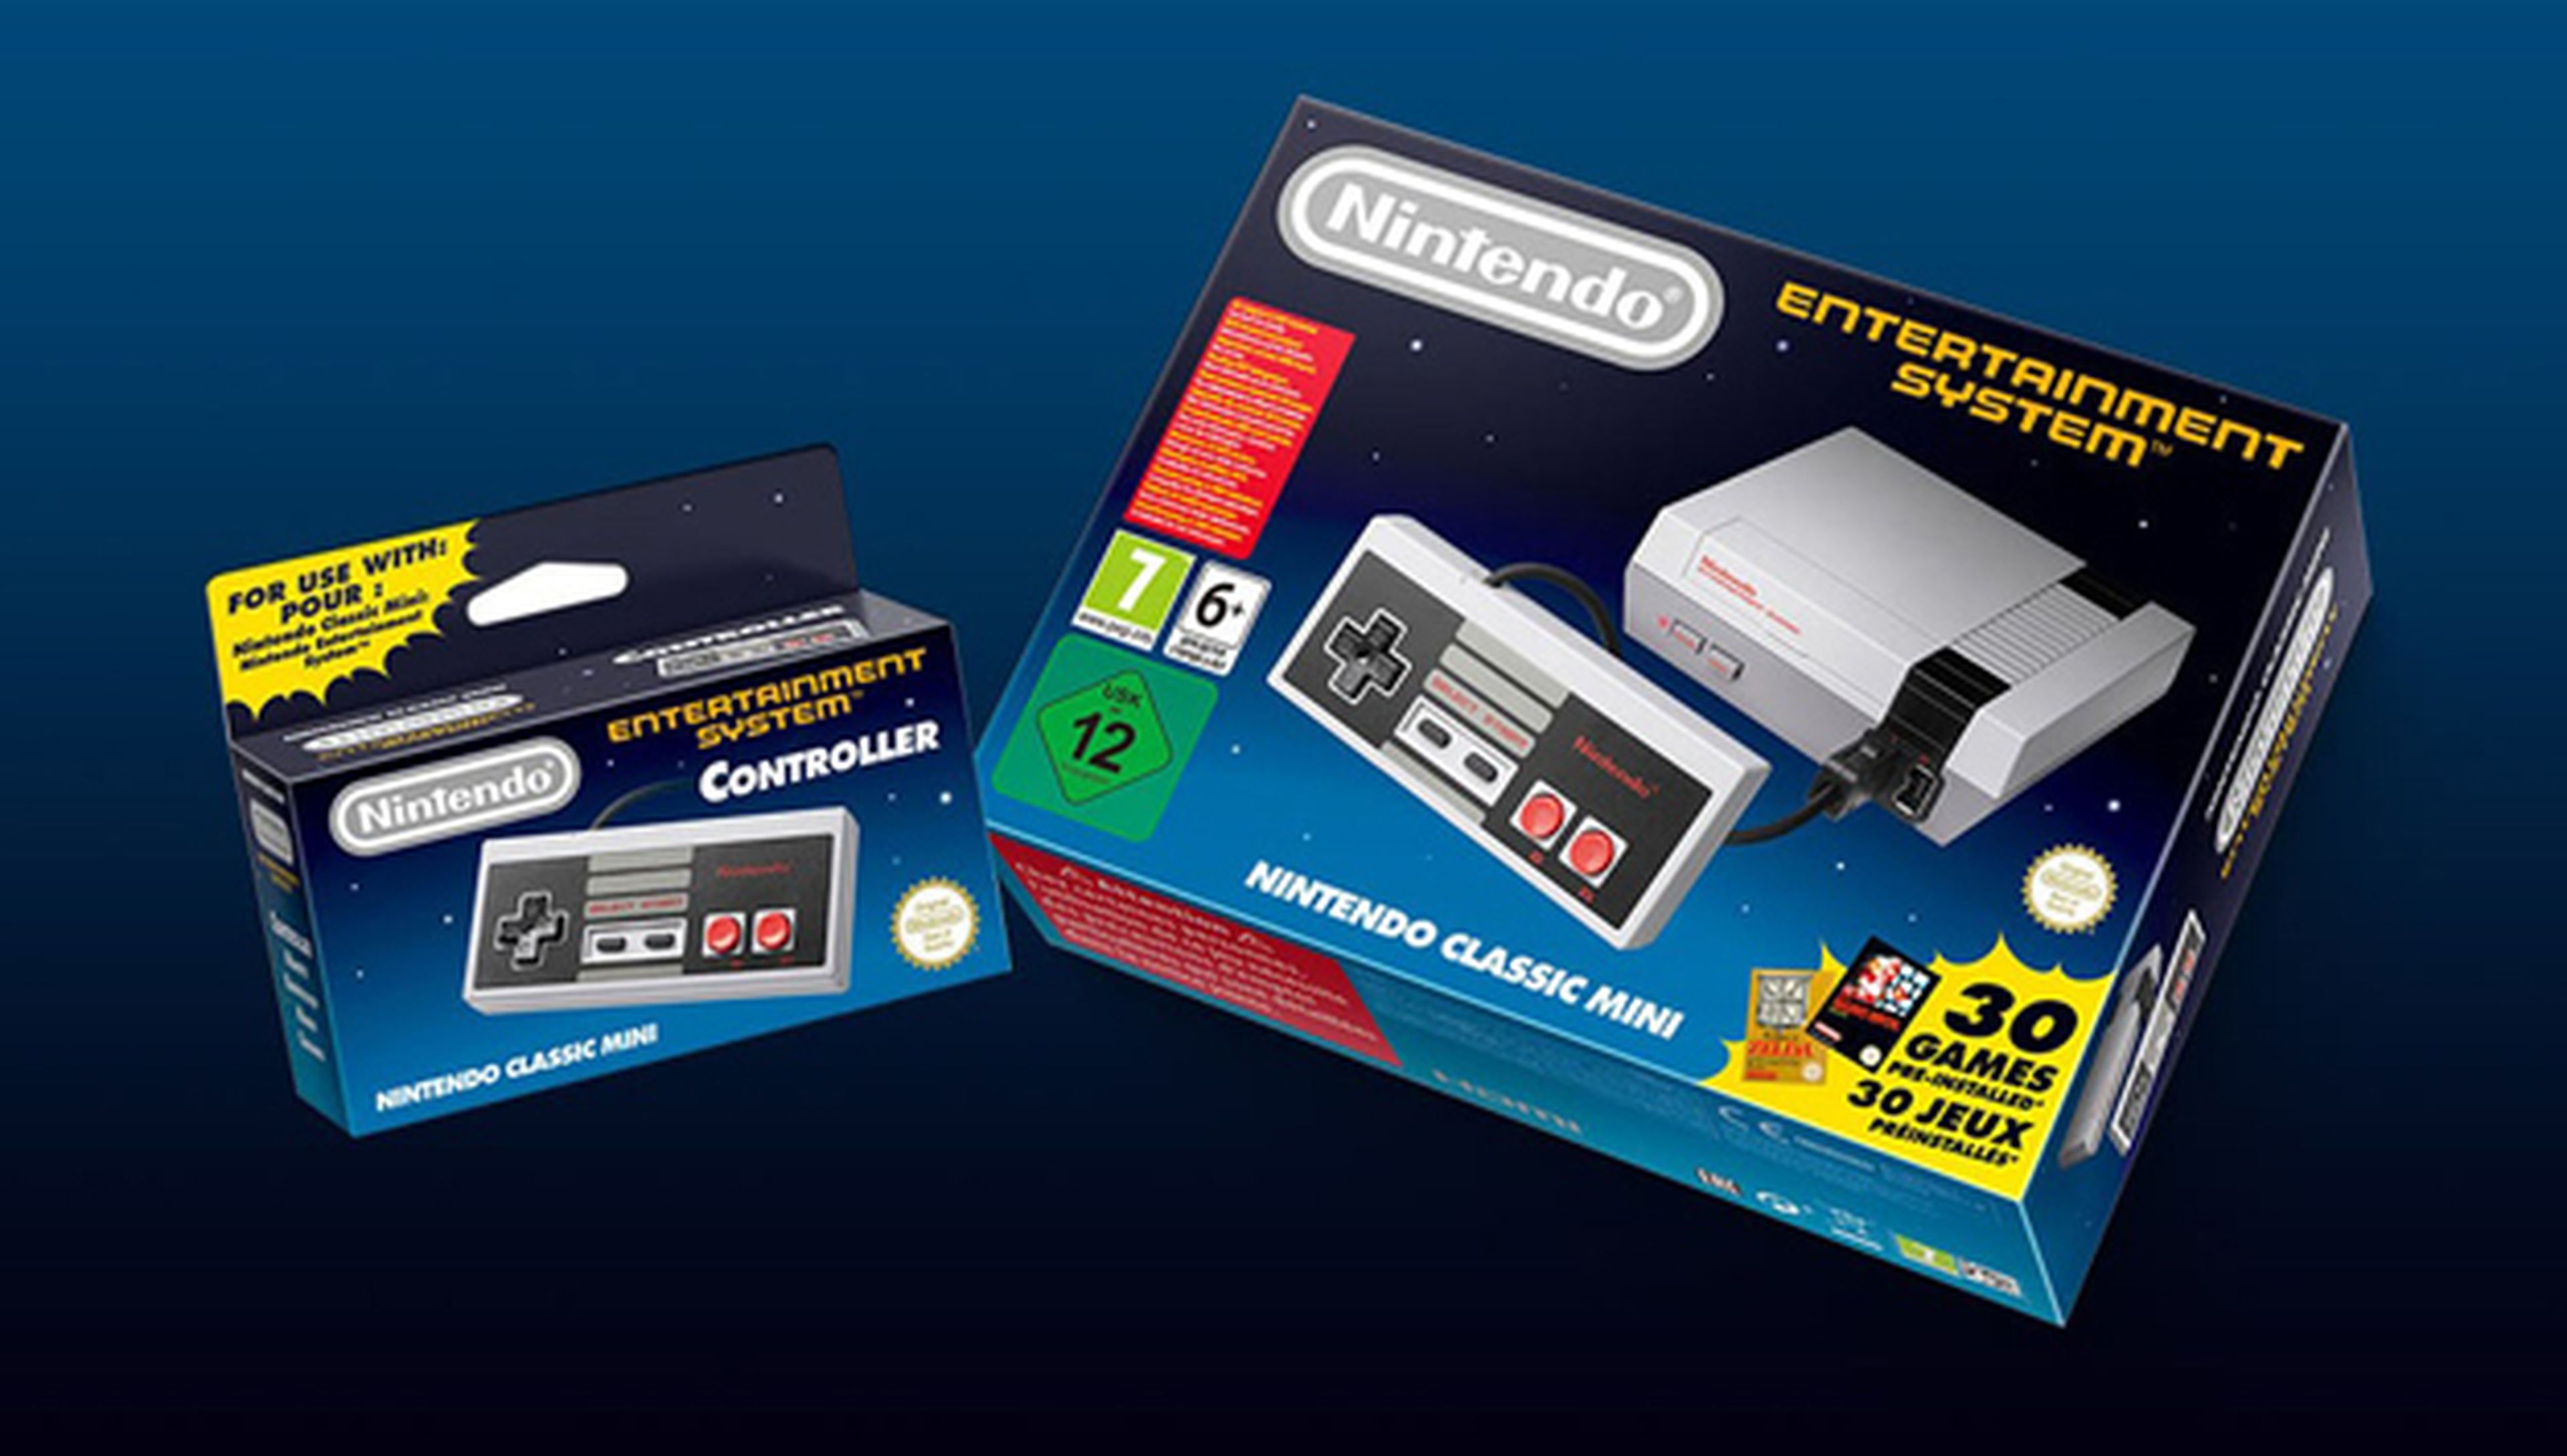 Los accesorios que trae la caja de la Nintendo Classic Mini